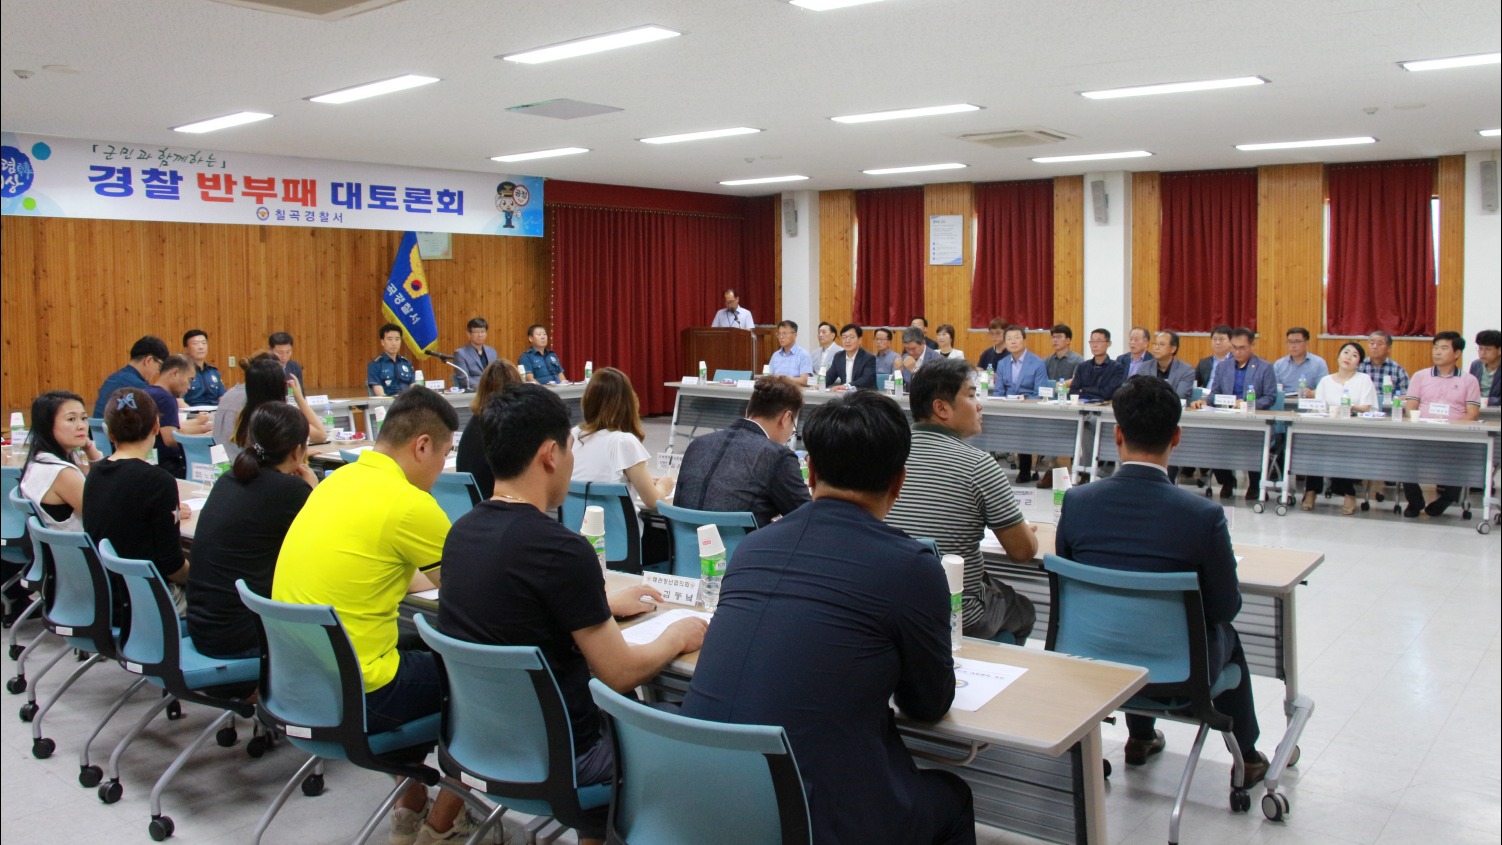 칠곡경찰서(서장 김형률)는 지난 31일 청사 유학마루에서 군민 50여명을 초청한 가운데 ‘반부패 대토론회’를 개최했다.